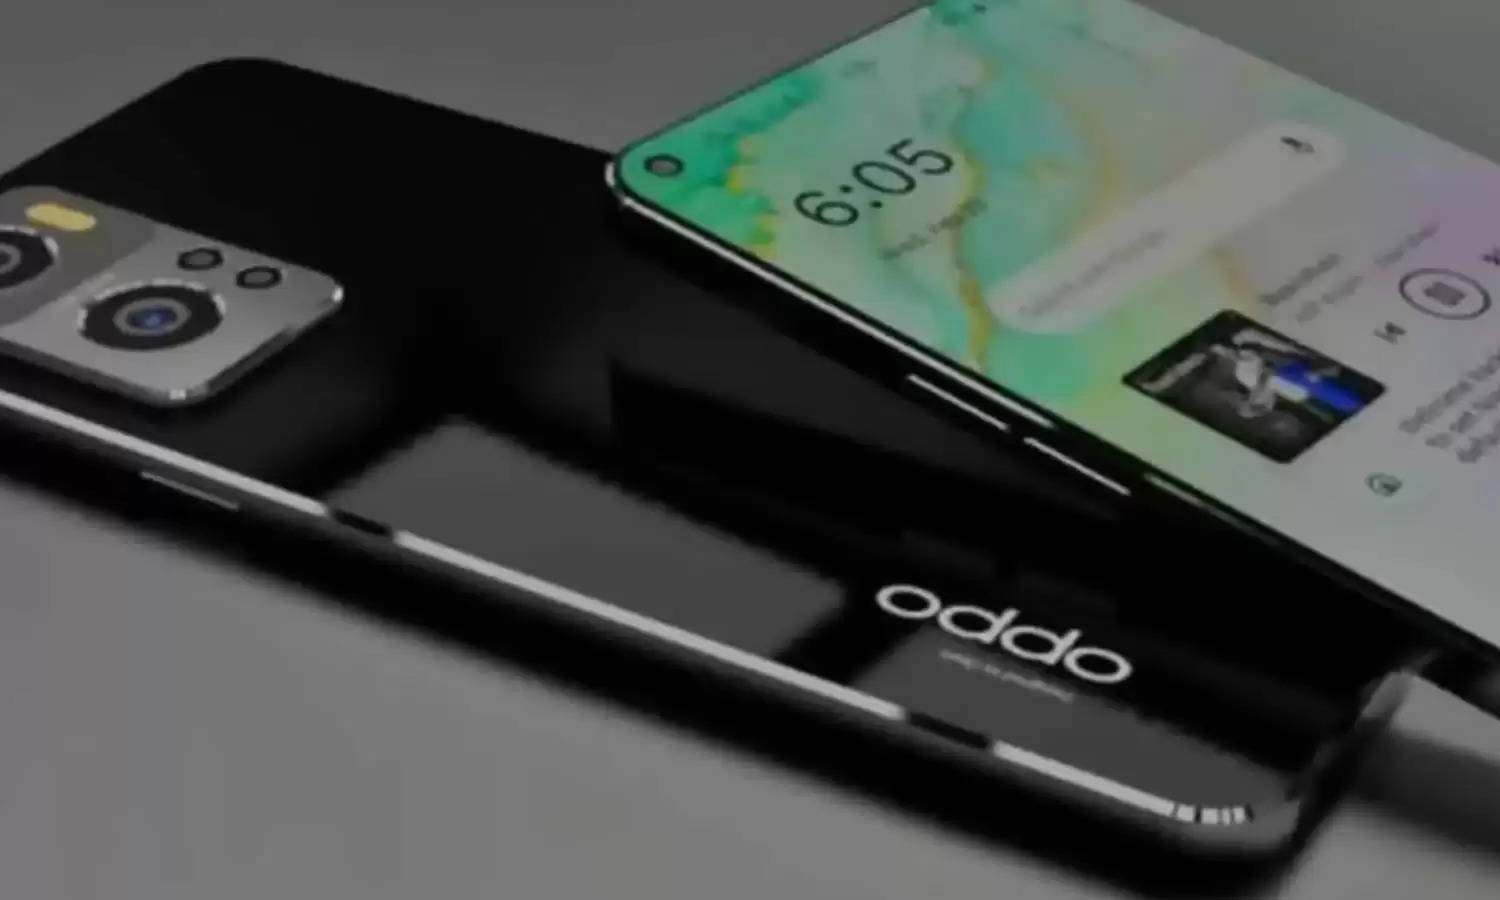 Oppo ला रहा कम कीमत में धांसू 5जी स्मार्टफोन, ग्राहकों को मिलेगी ये जबरदस्त खूबियां